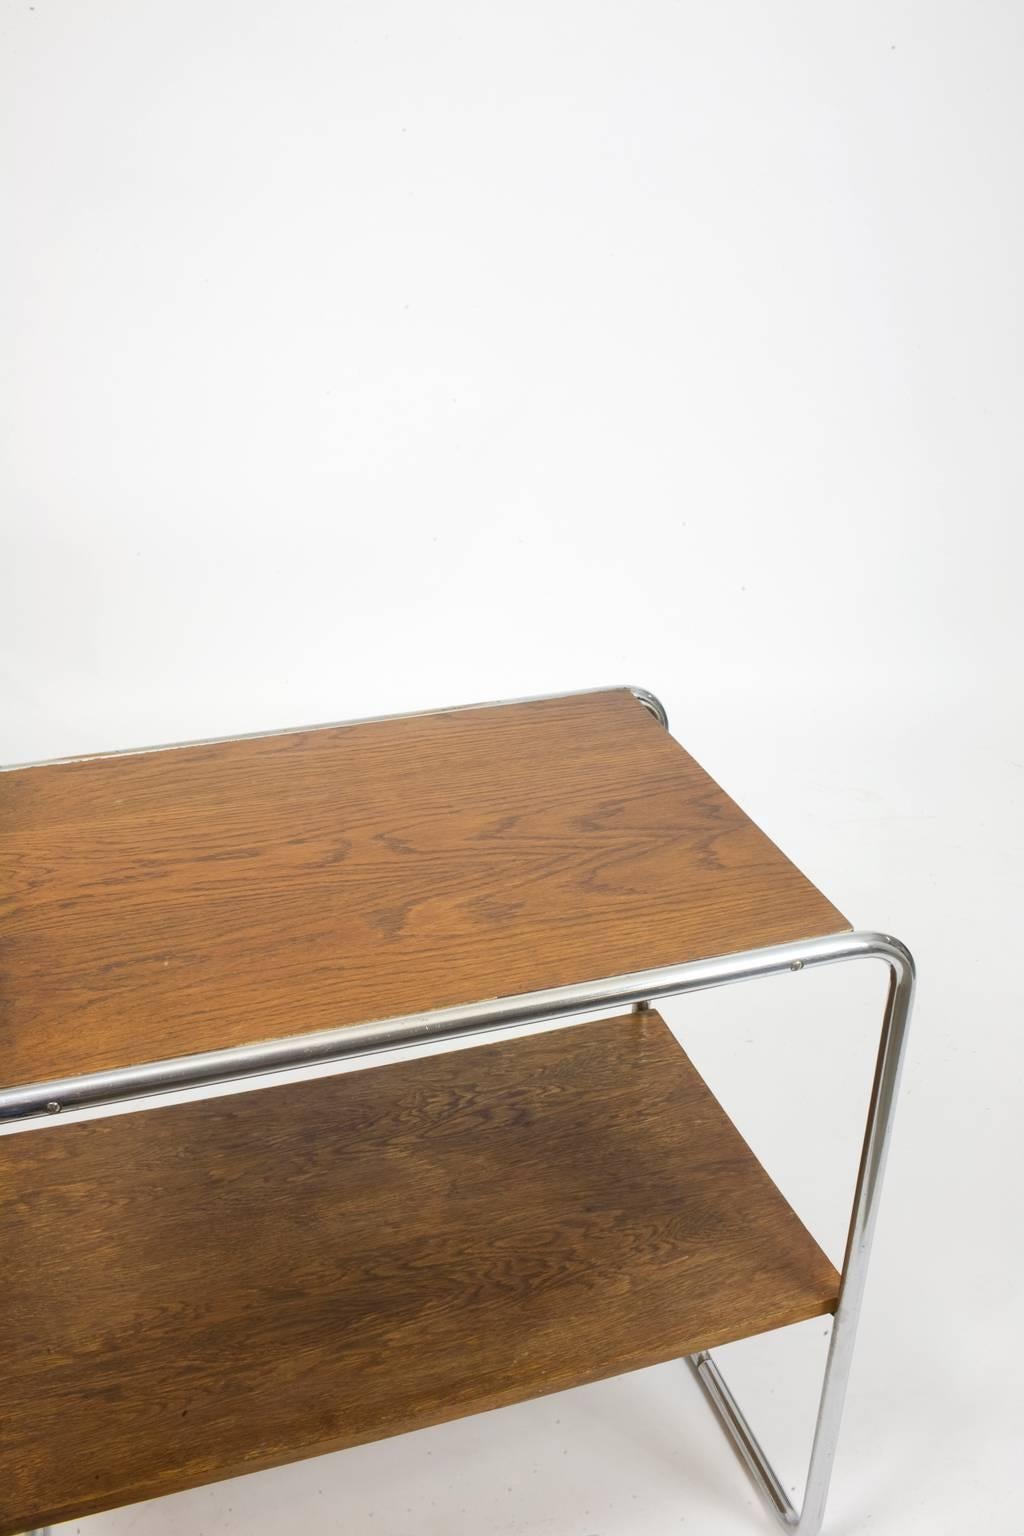 German 1930s Bauhaus Marcel Breuer Bar Console Table For Sale